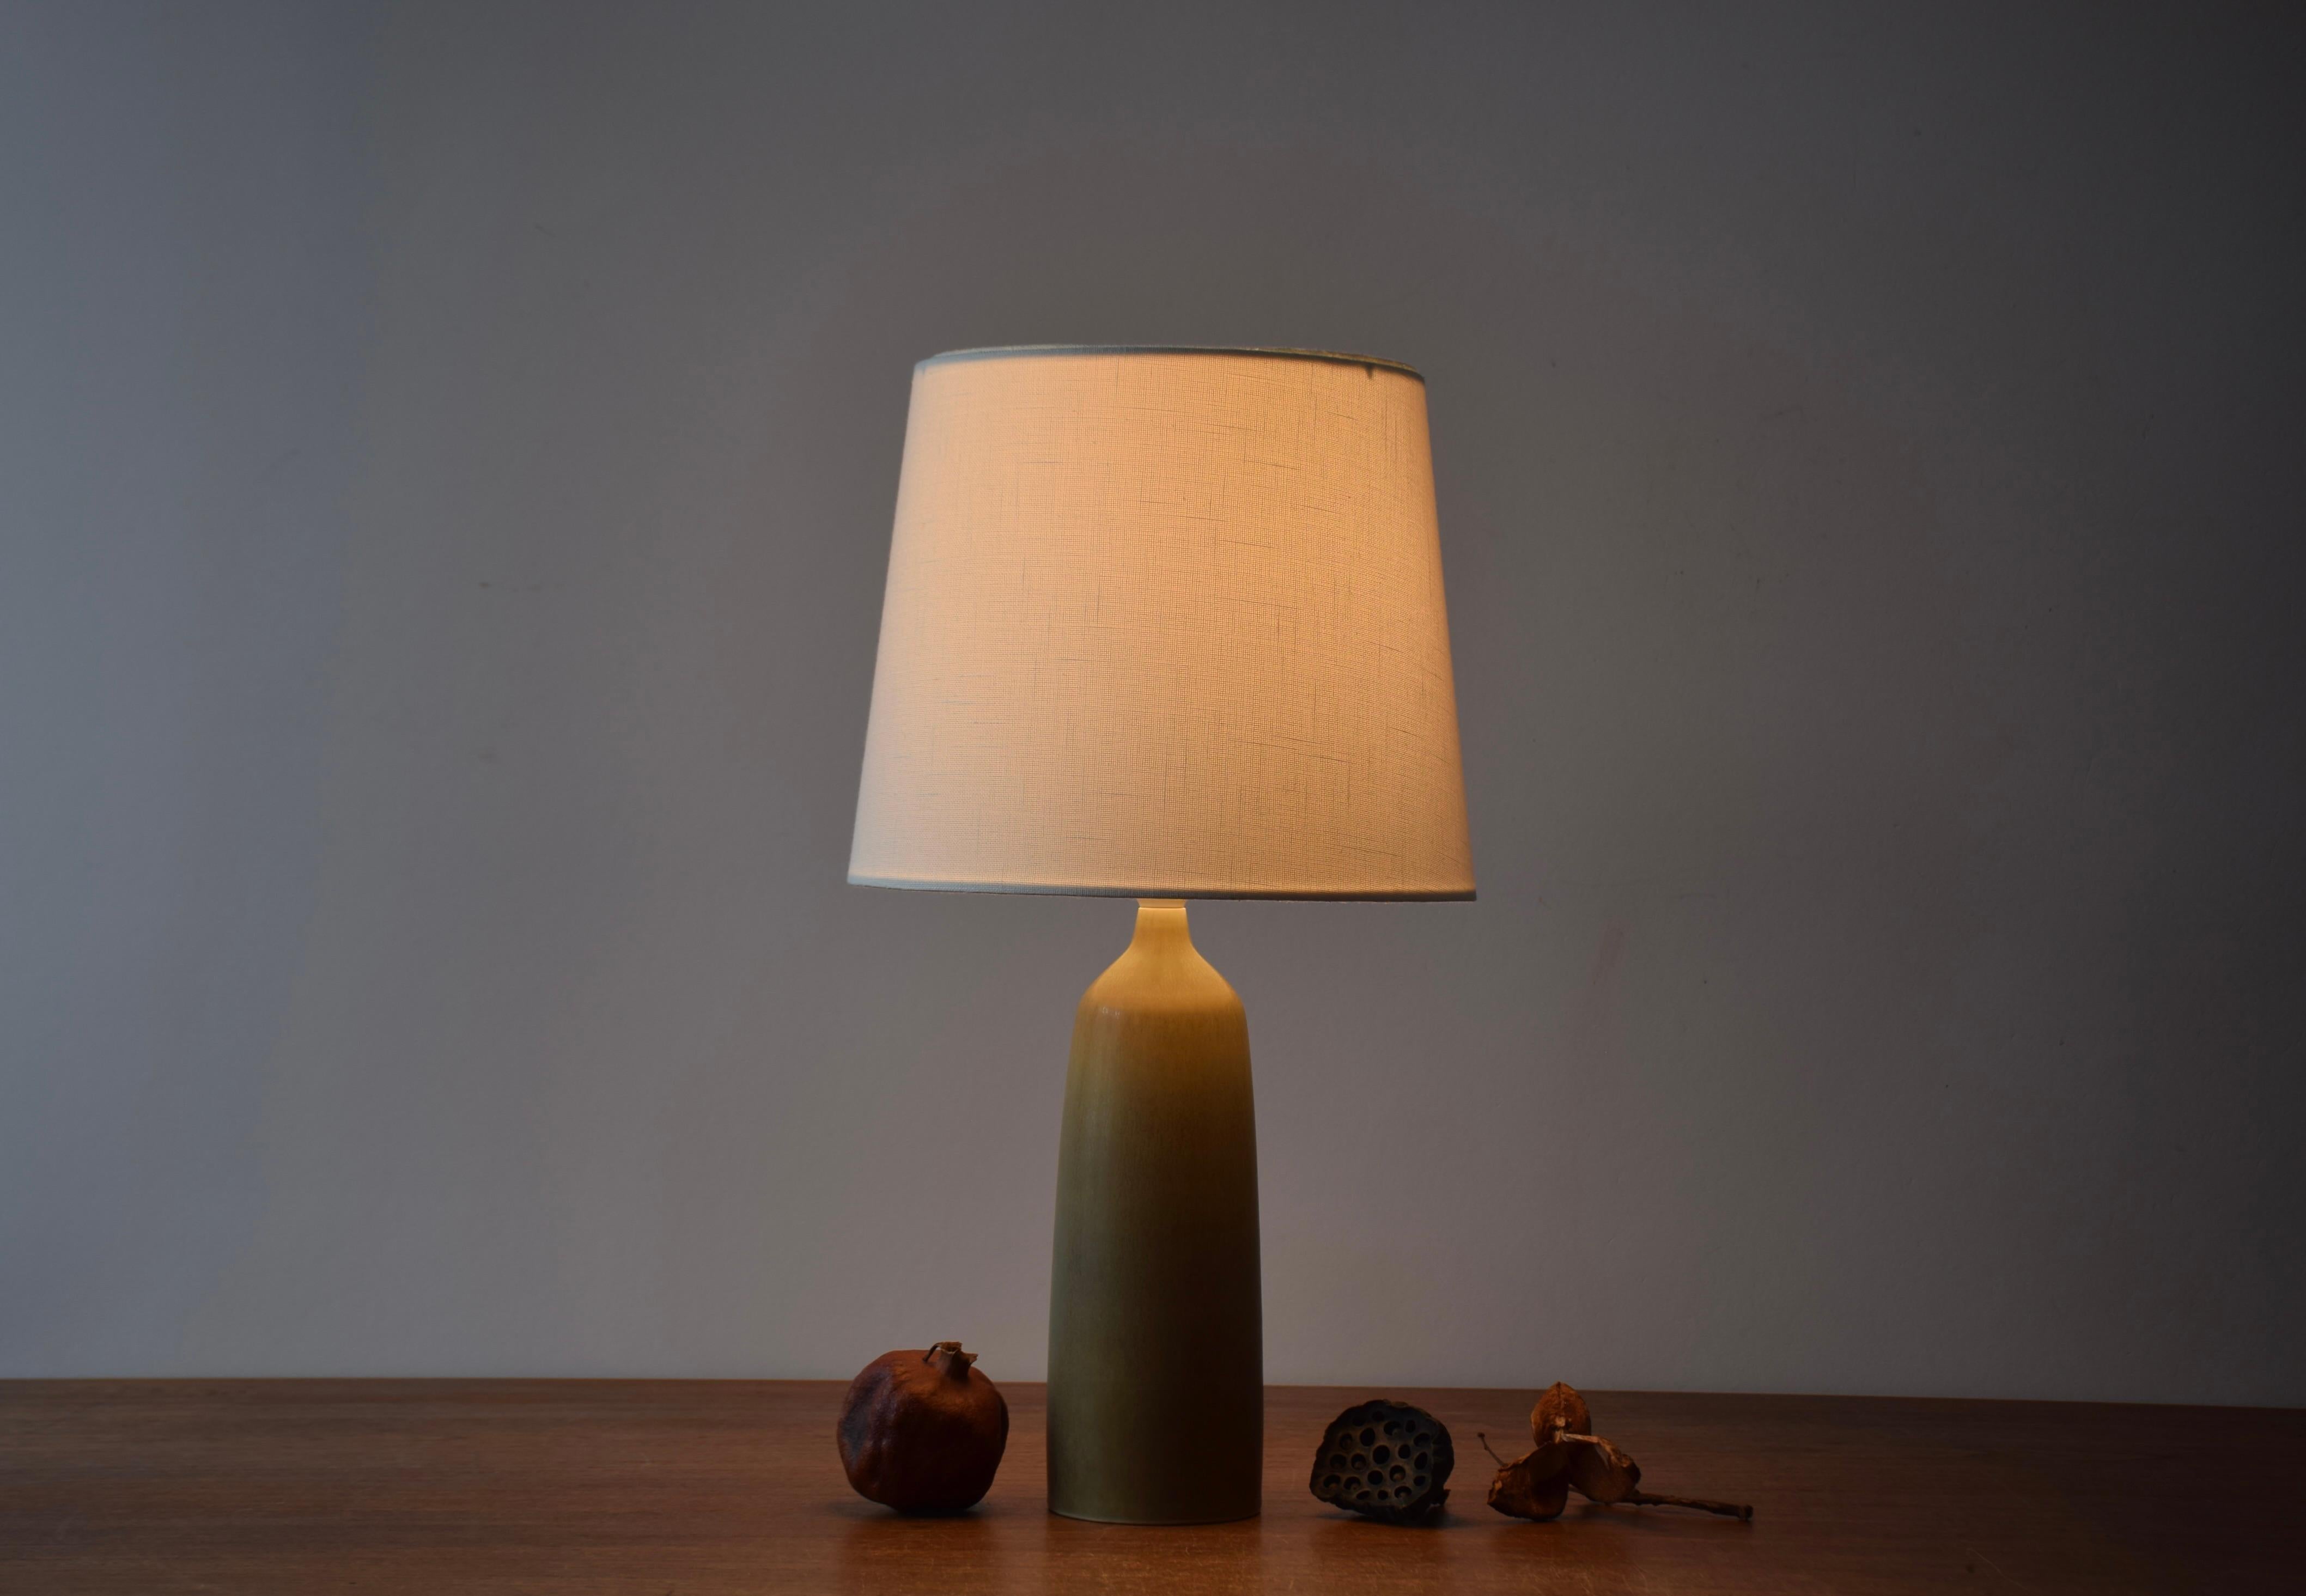 Lampe de table du milieu du siècle dernier de l'atelier de céramique danois Palshus.  
La lampe a été conçue par Per Linnemann-Schmidt et fabriquée vers les années 1950.

La lampe présente une glaçure HaresFur vert olive sur une forme élégante.

Un